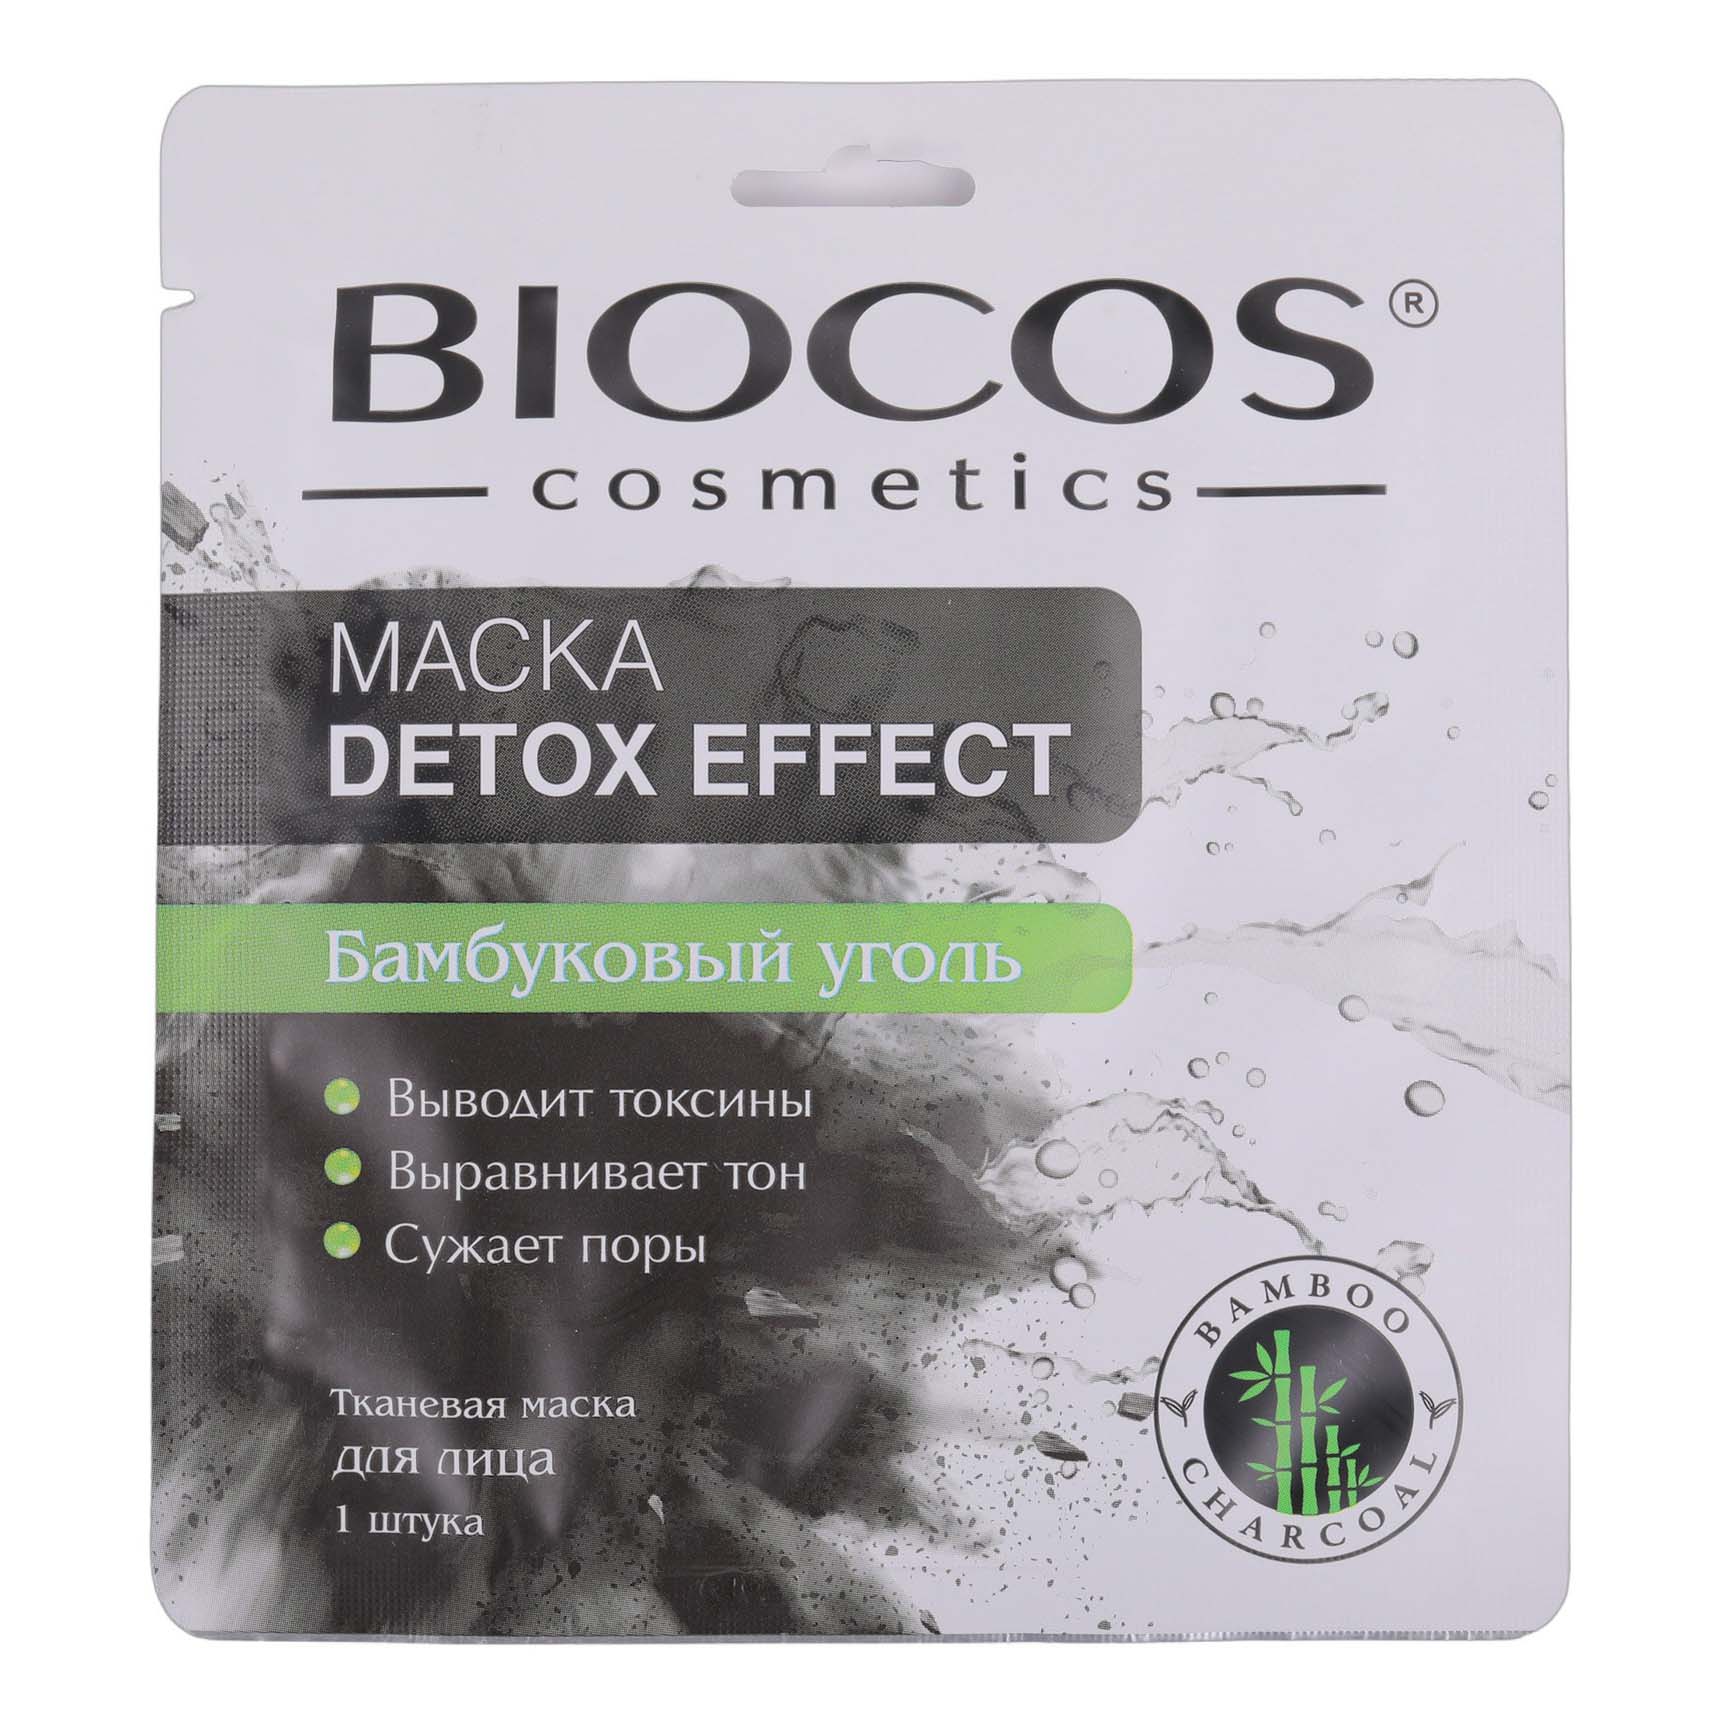 Маска тканевая для лица Biocos Detox Effect с бамбуковым углем 1 шт lebelage тканевая маска для лица с экстрактом винограда 25 0